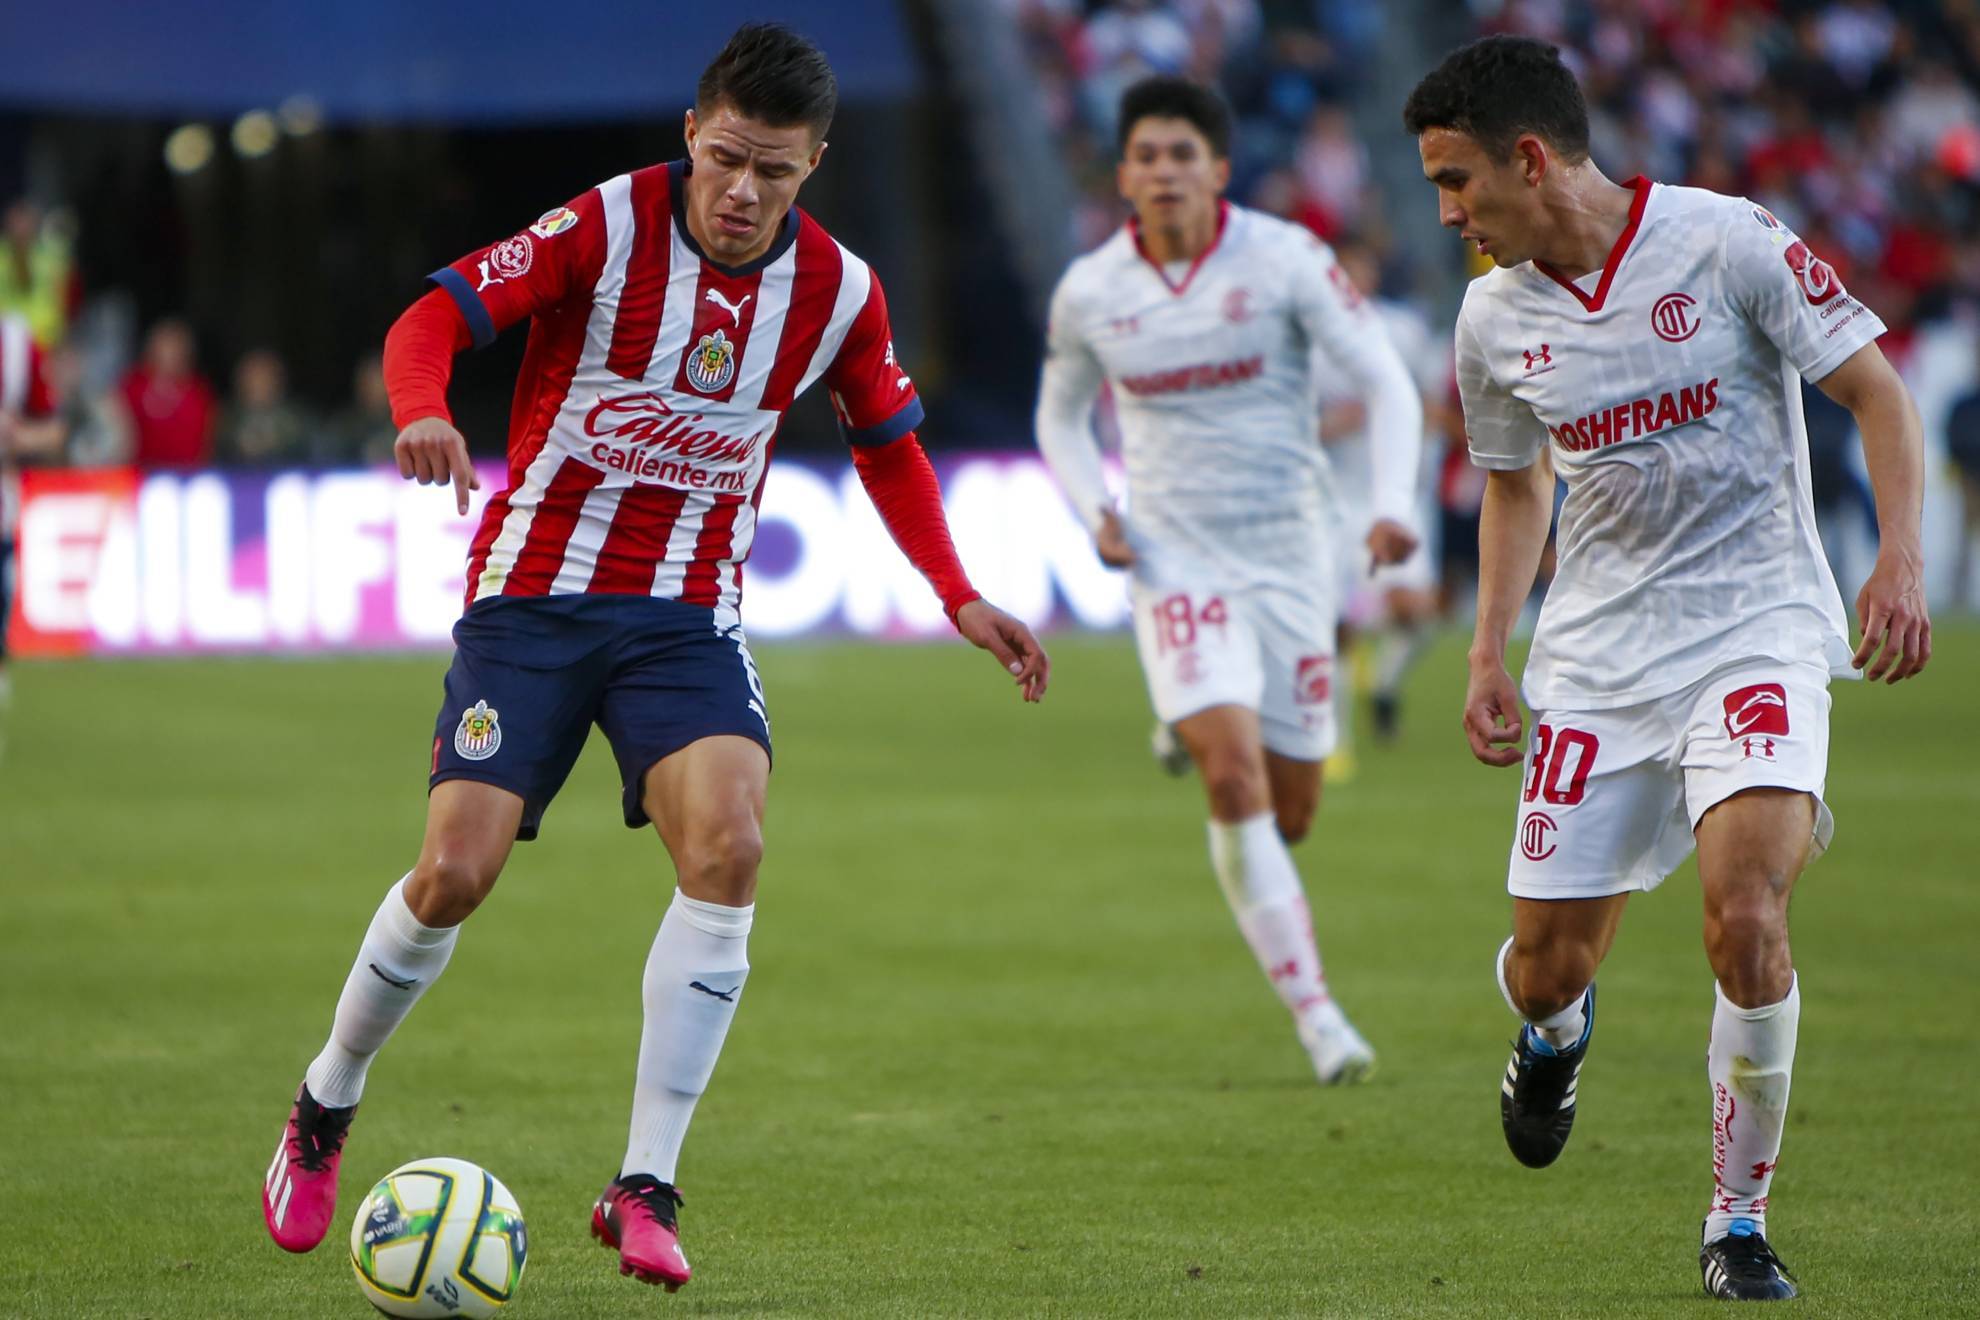 Chivas y Toluca empataron en un juego amistoso